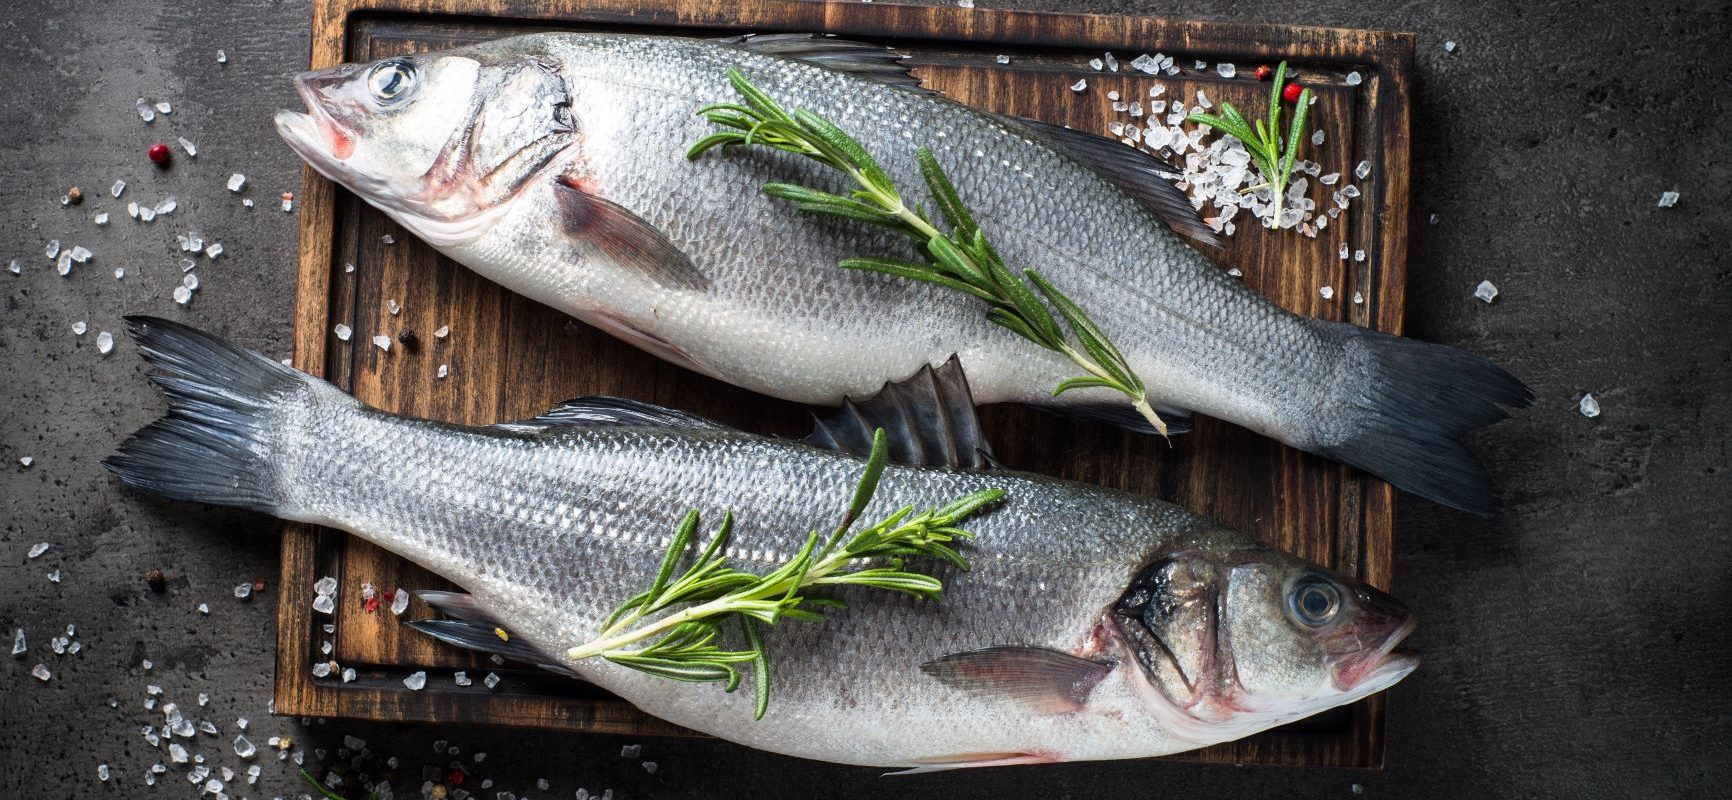 Jak kupować ryby odpowiedzialnie?